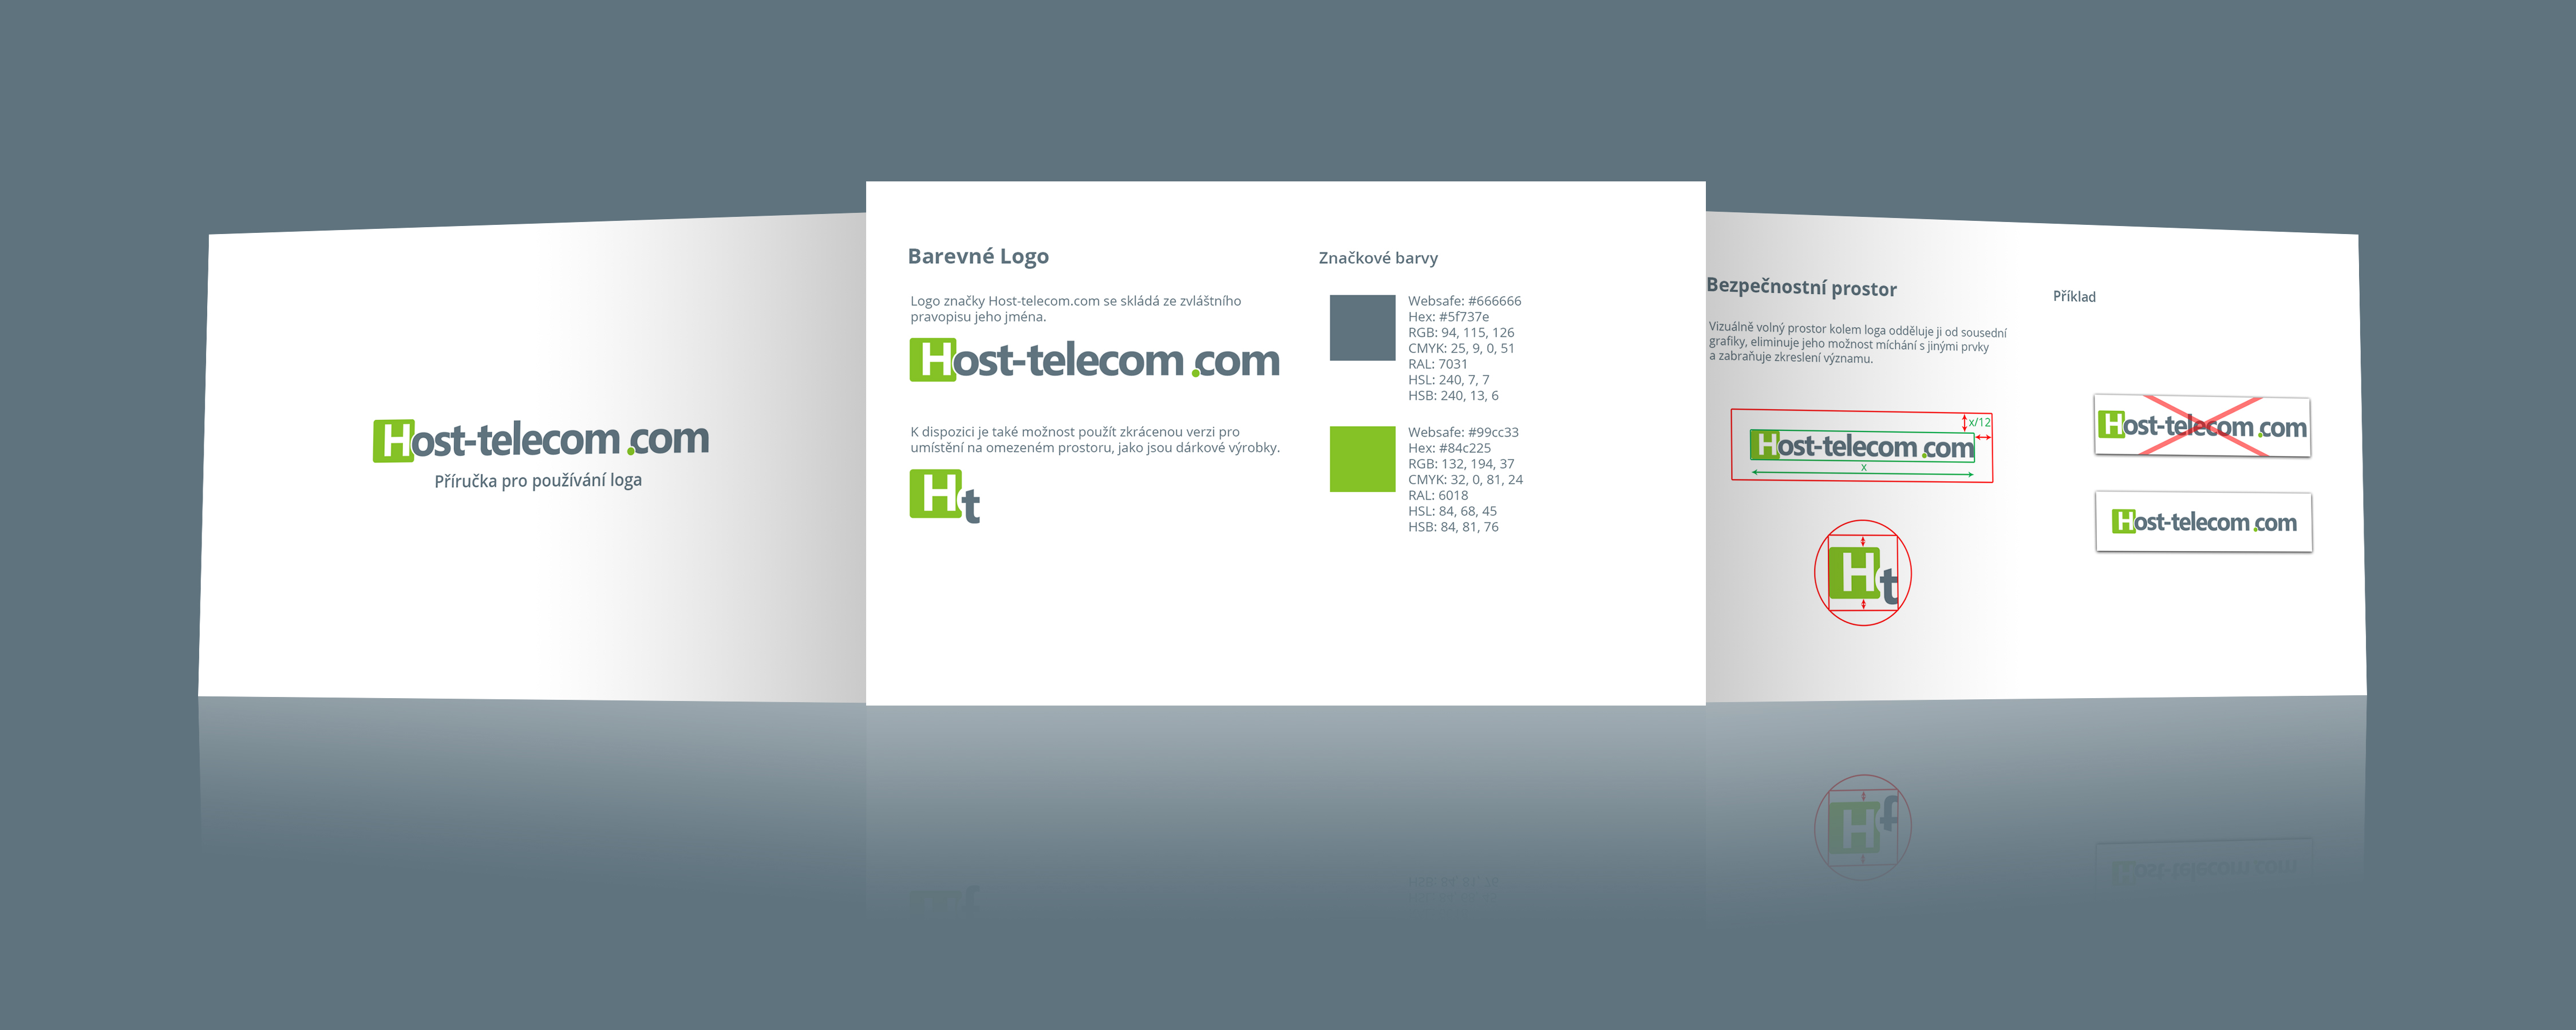 Руководство по использованию логотипа Host-telecom.com